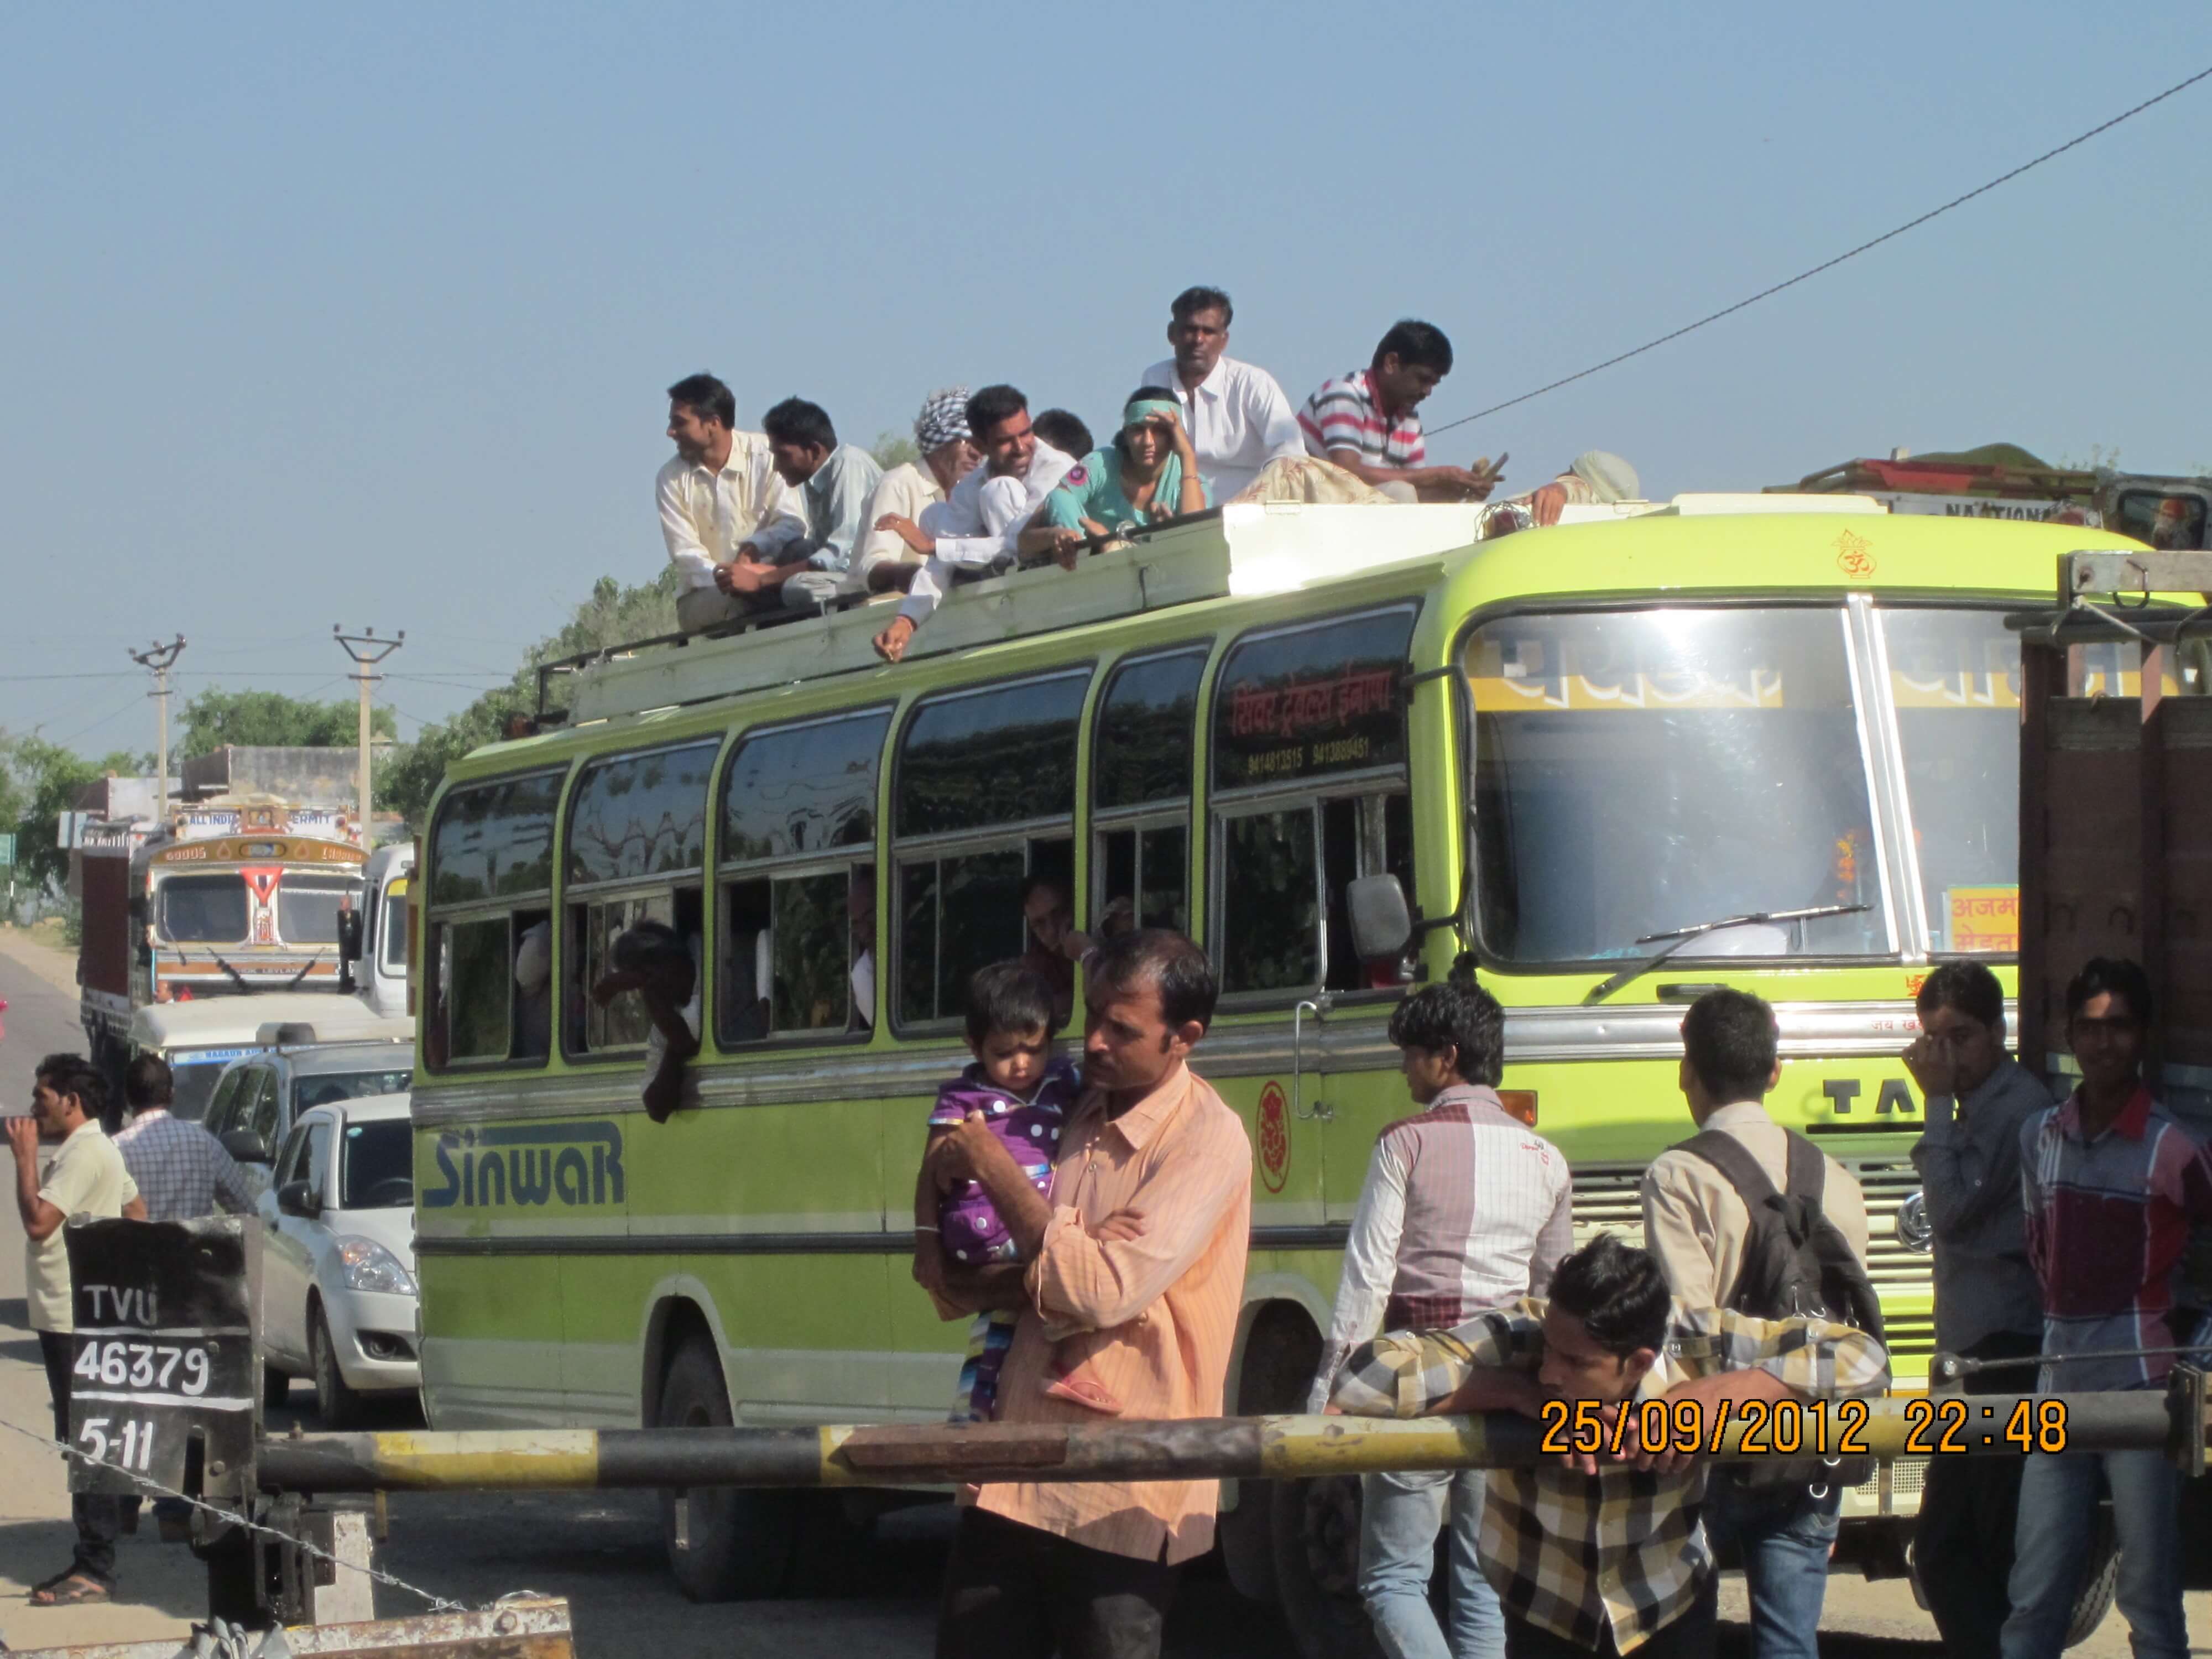 אטובוס הודי, מחלקה ראשונה על הגג